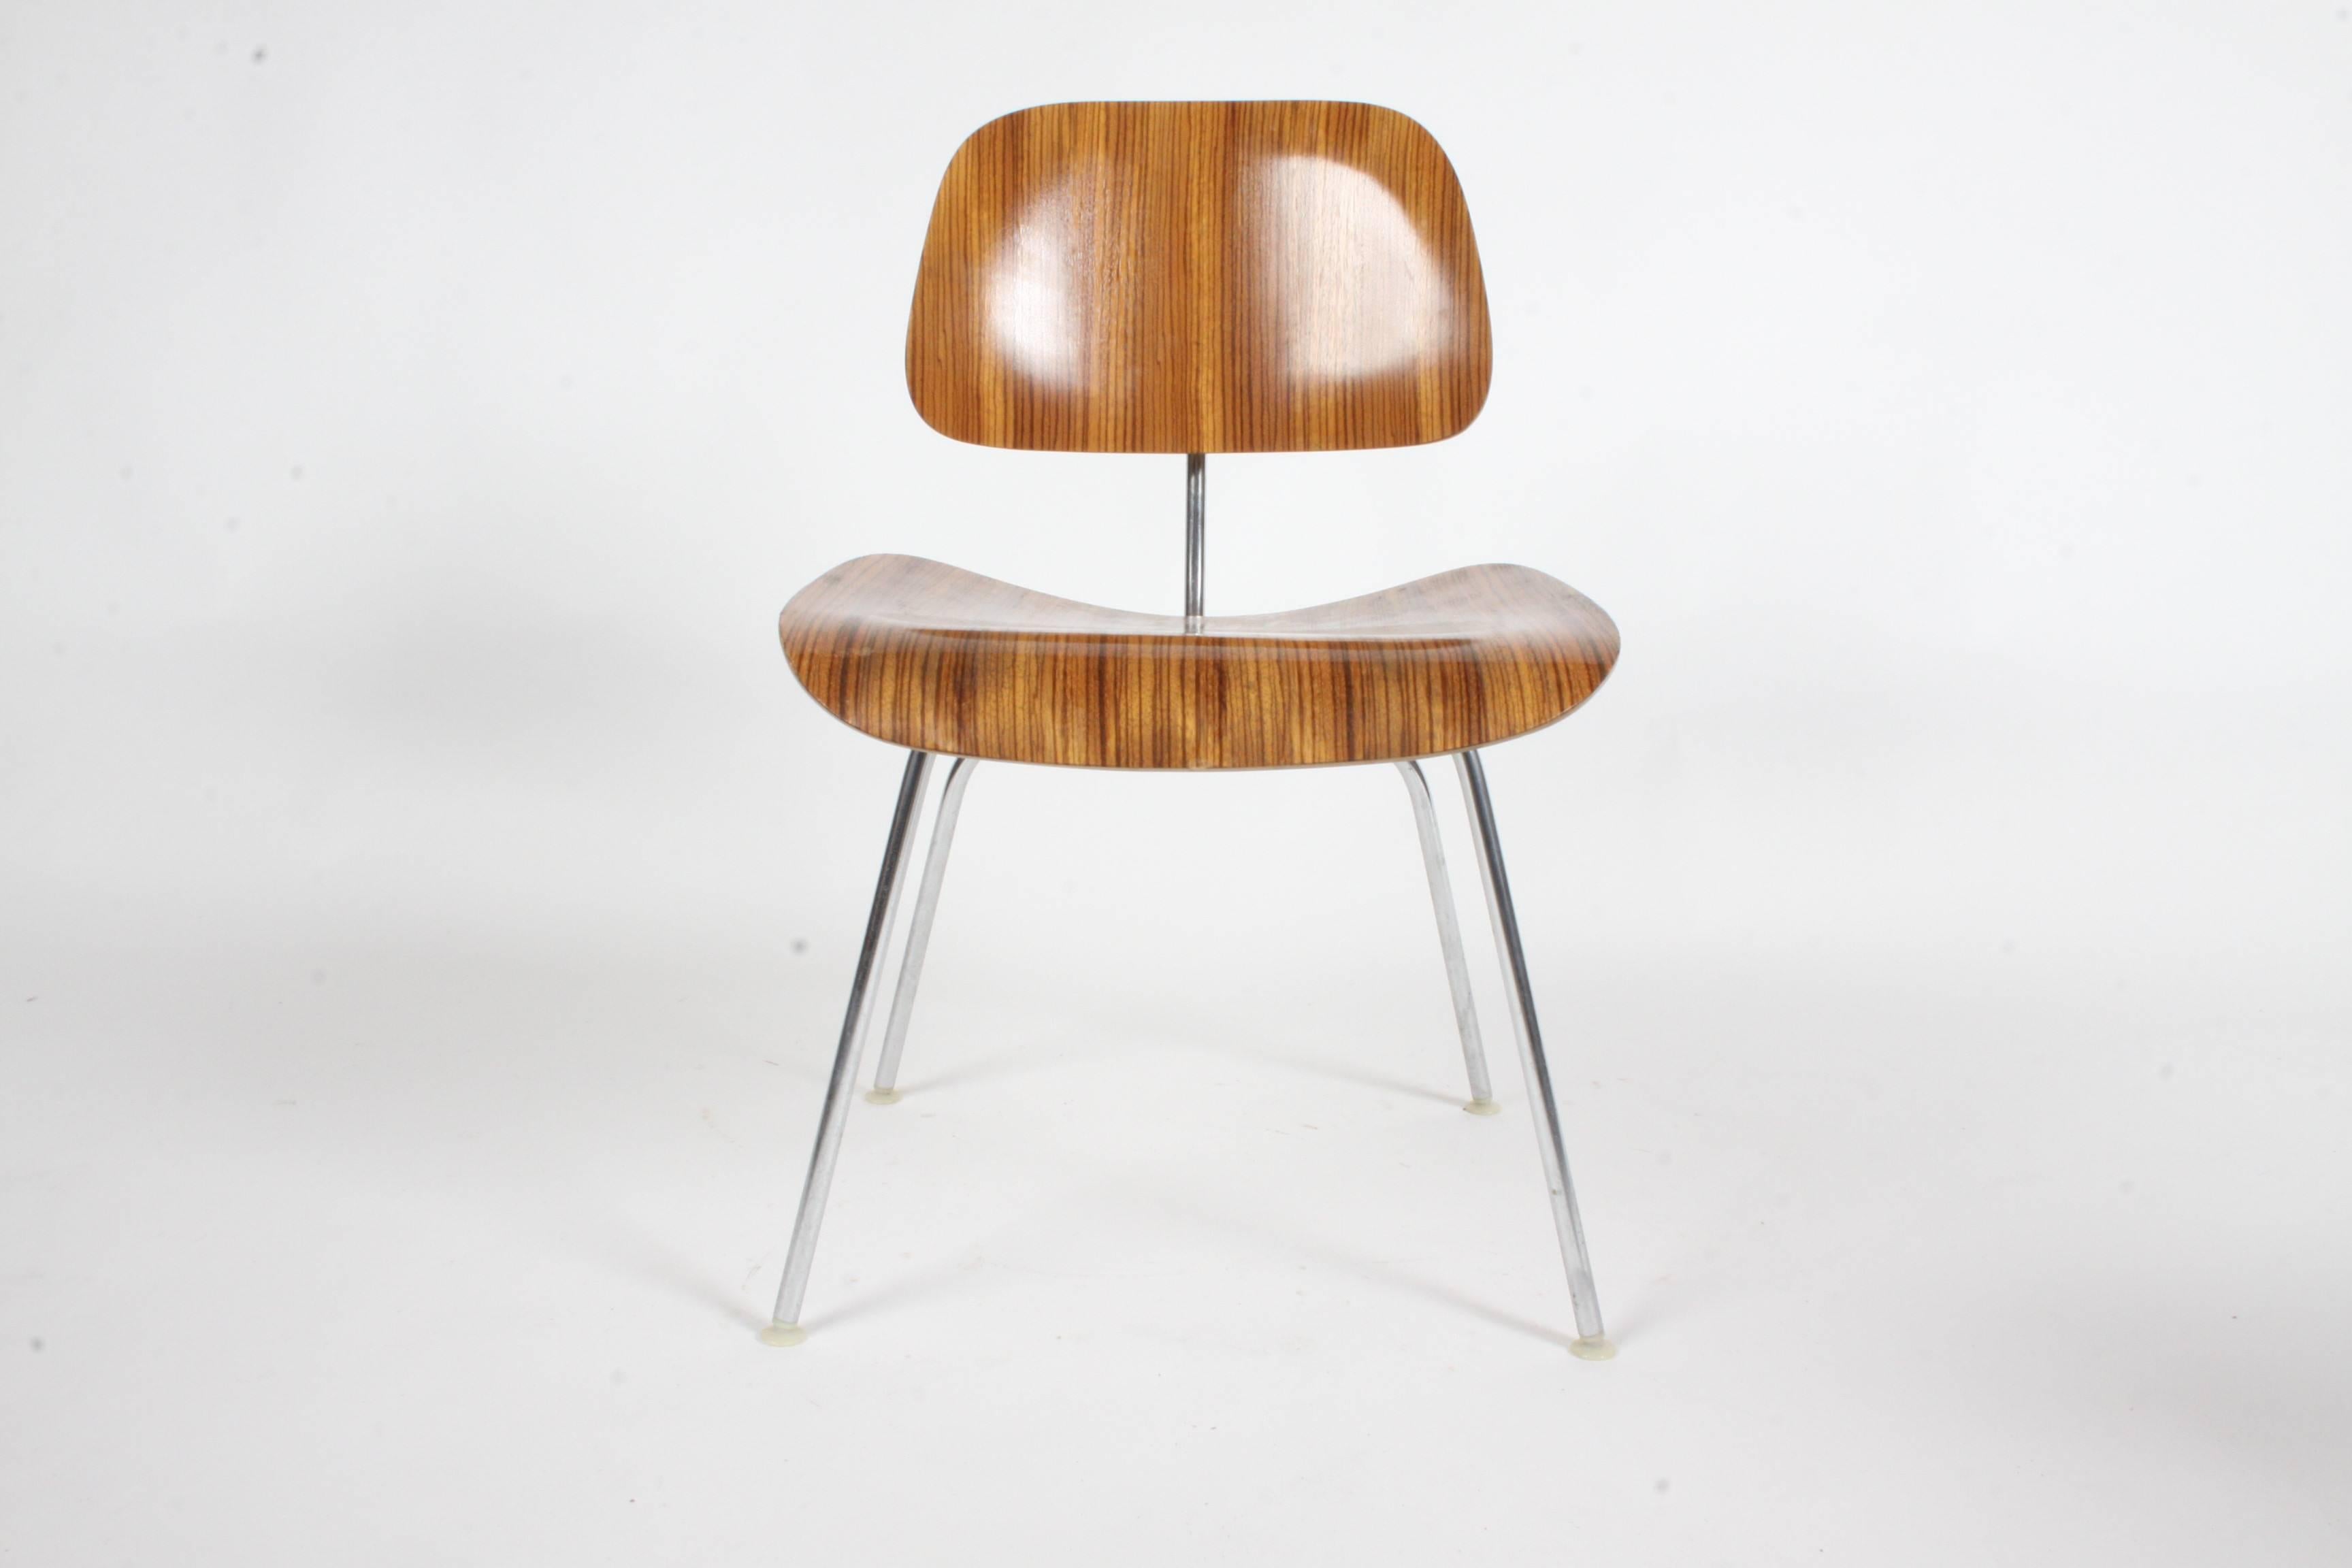  Charles Eames für Herman Miller Zebrawood DCM Stühle, seltener Satz. Zebrano-Holz wurde von 1954-1959 verwendet. Sehr schöner Originalzustand, kleine Schrammen am Sitz. Labels.